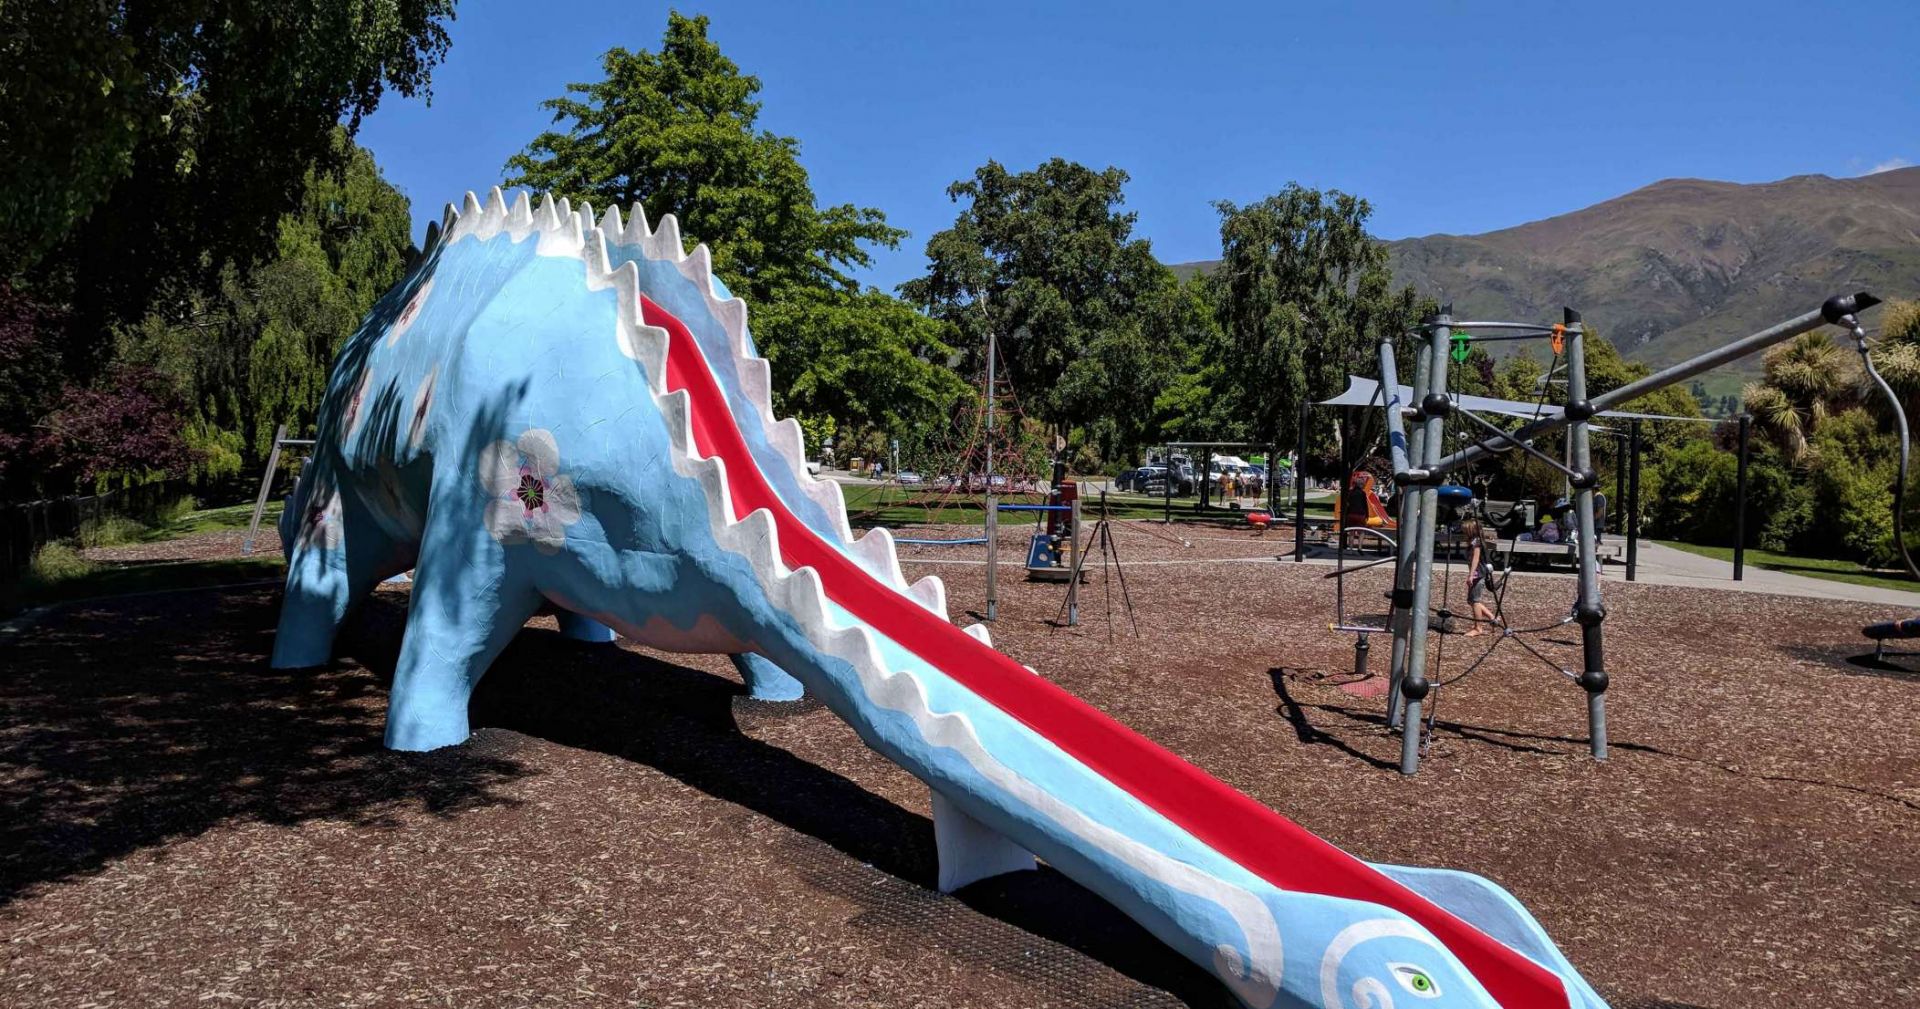 Dinosaur slide in Dinosaur Park in Wanaka.